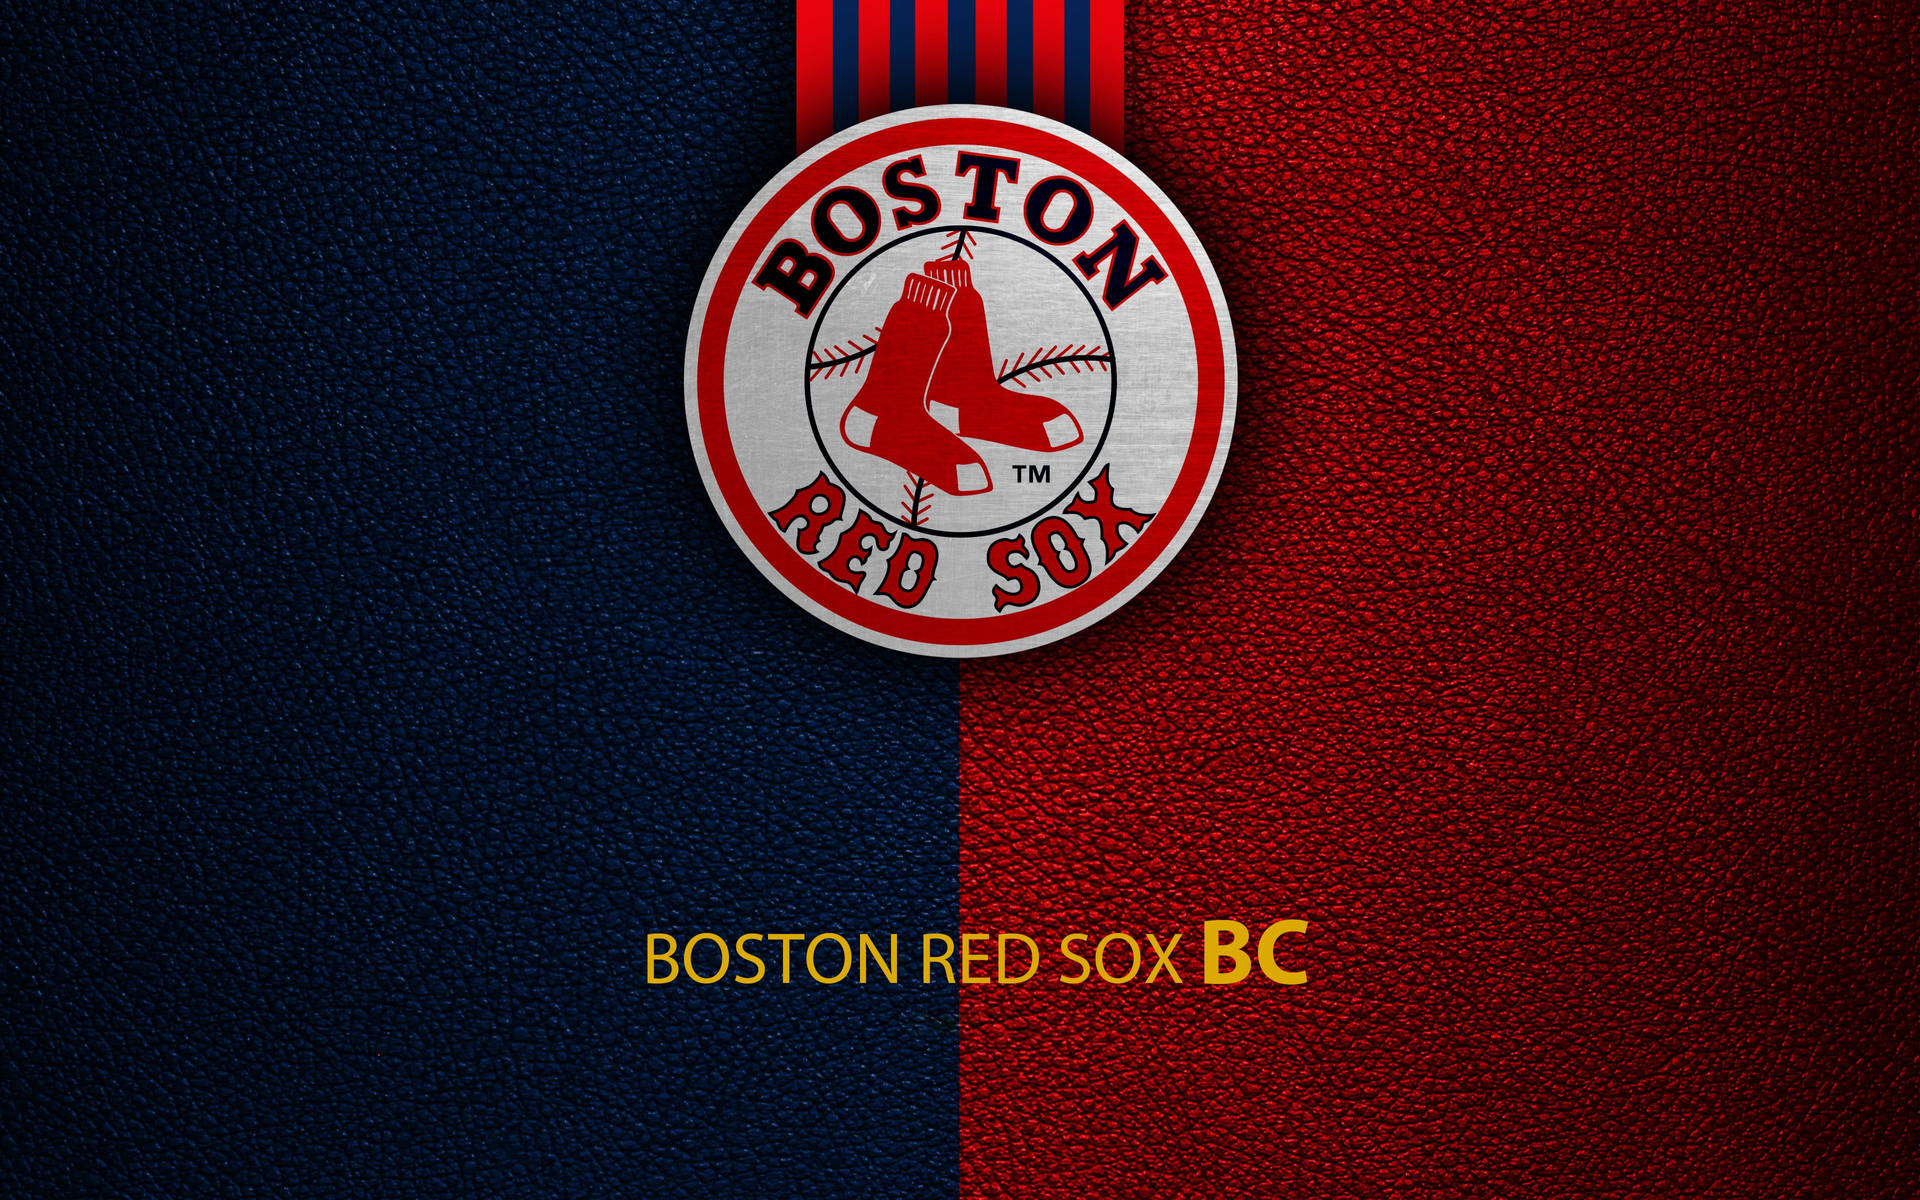 Boston Red Sox BC Wallpaper